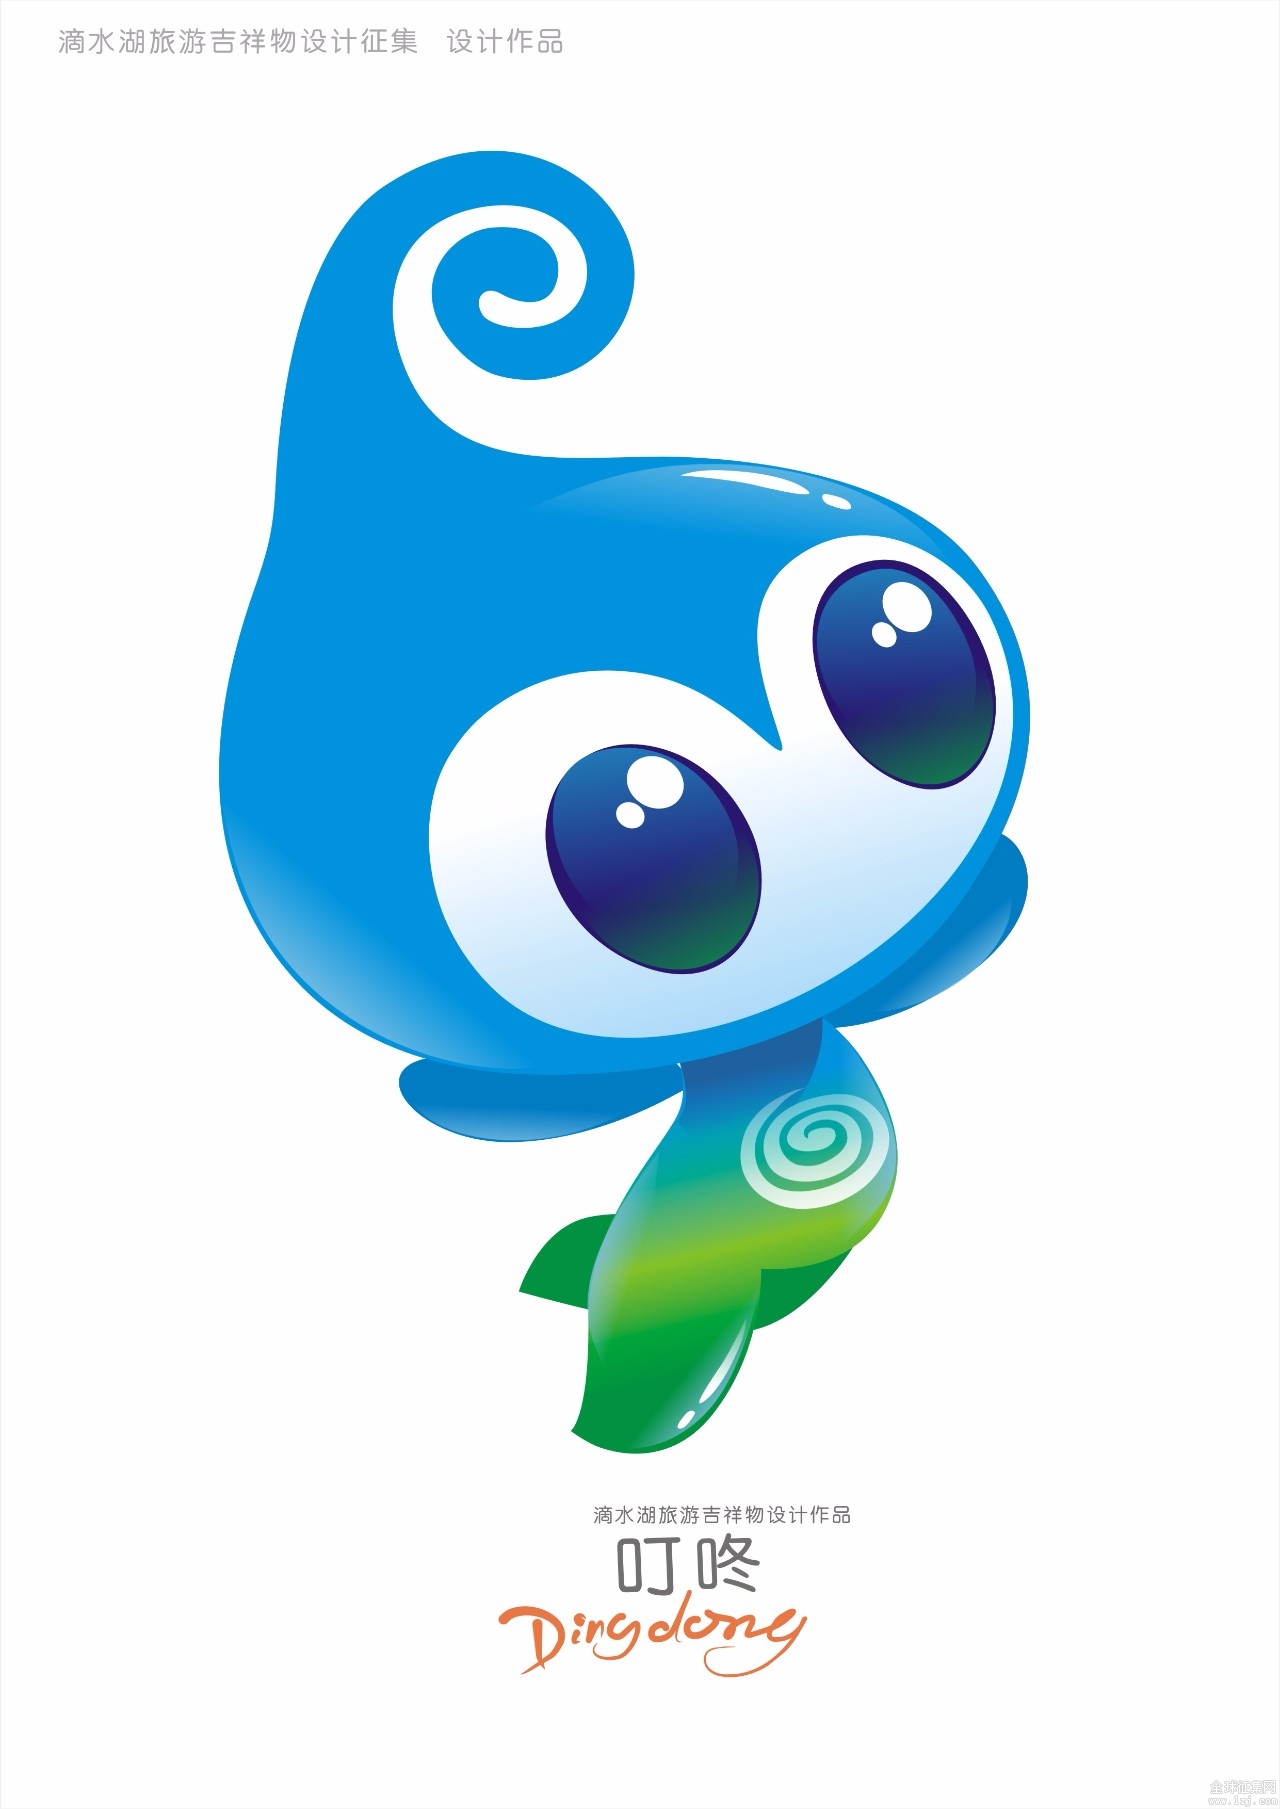 中标奖叮咚的作者,李波先生阐述了叮咚的设计理念:吉祥物以"水滴","